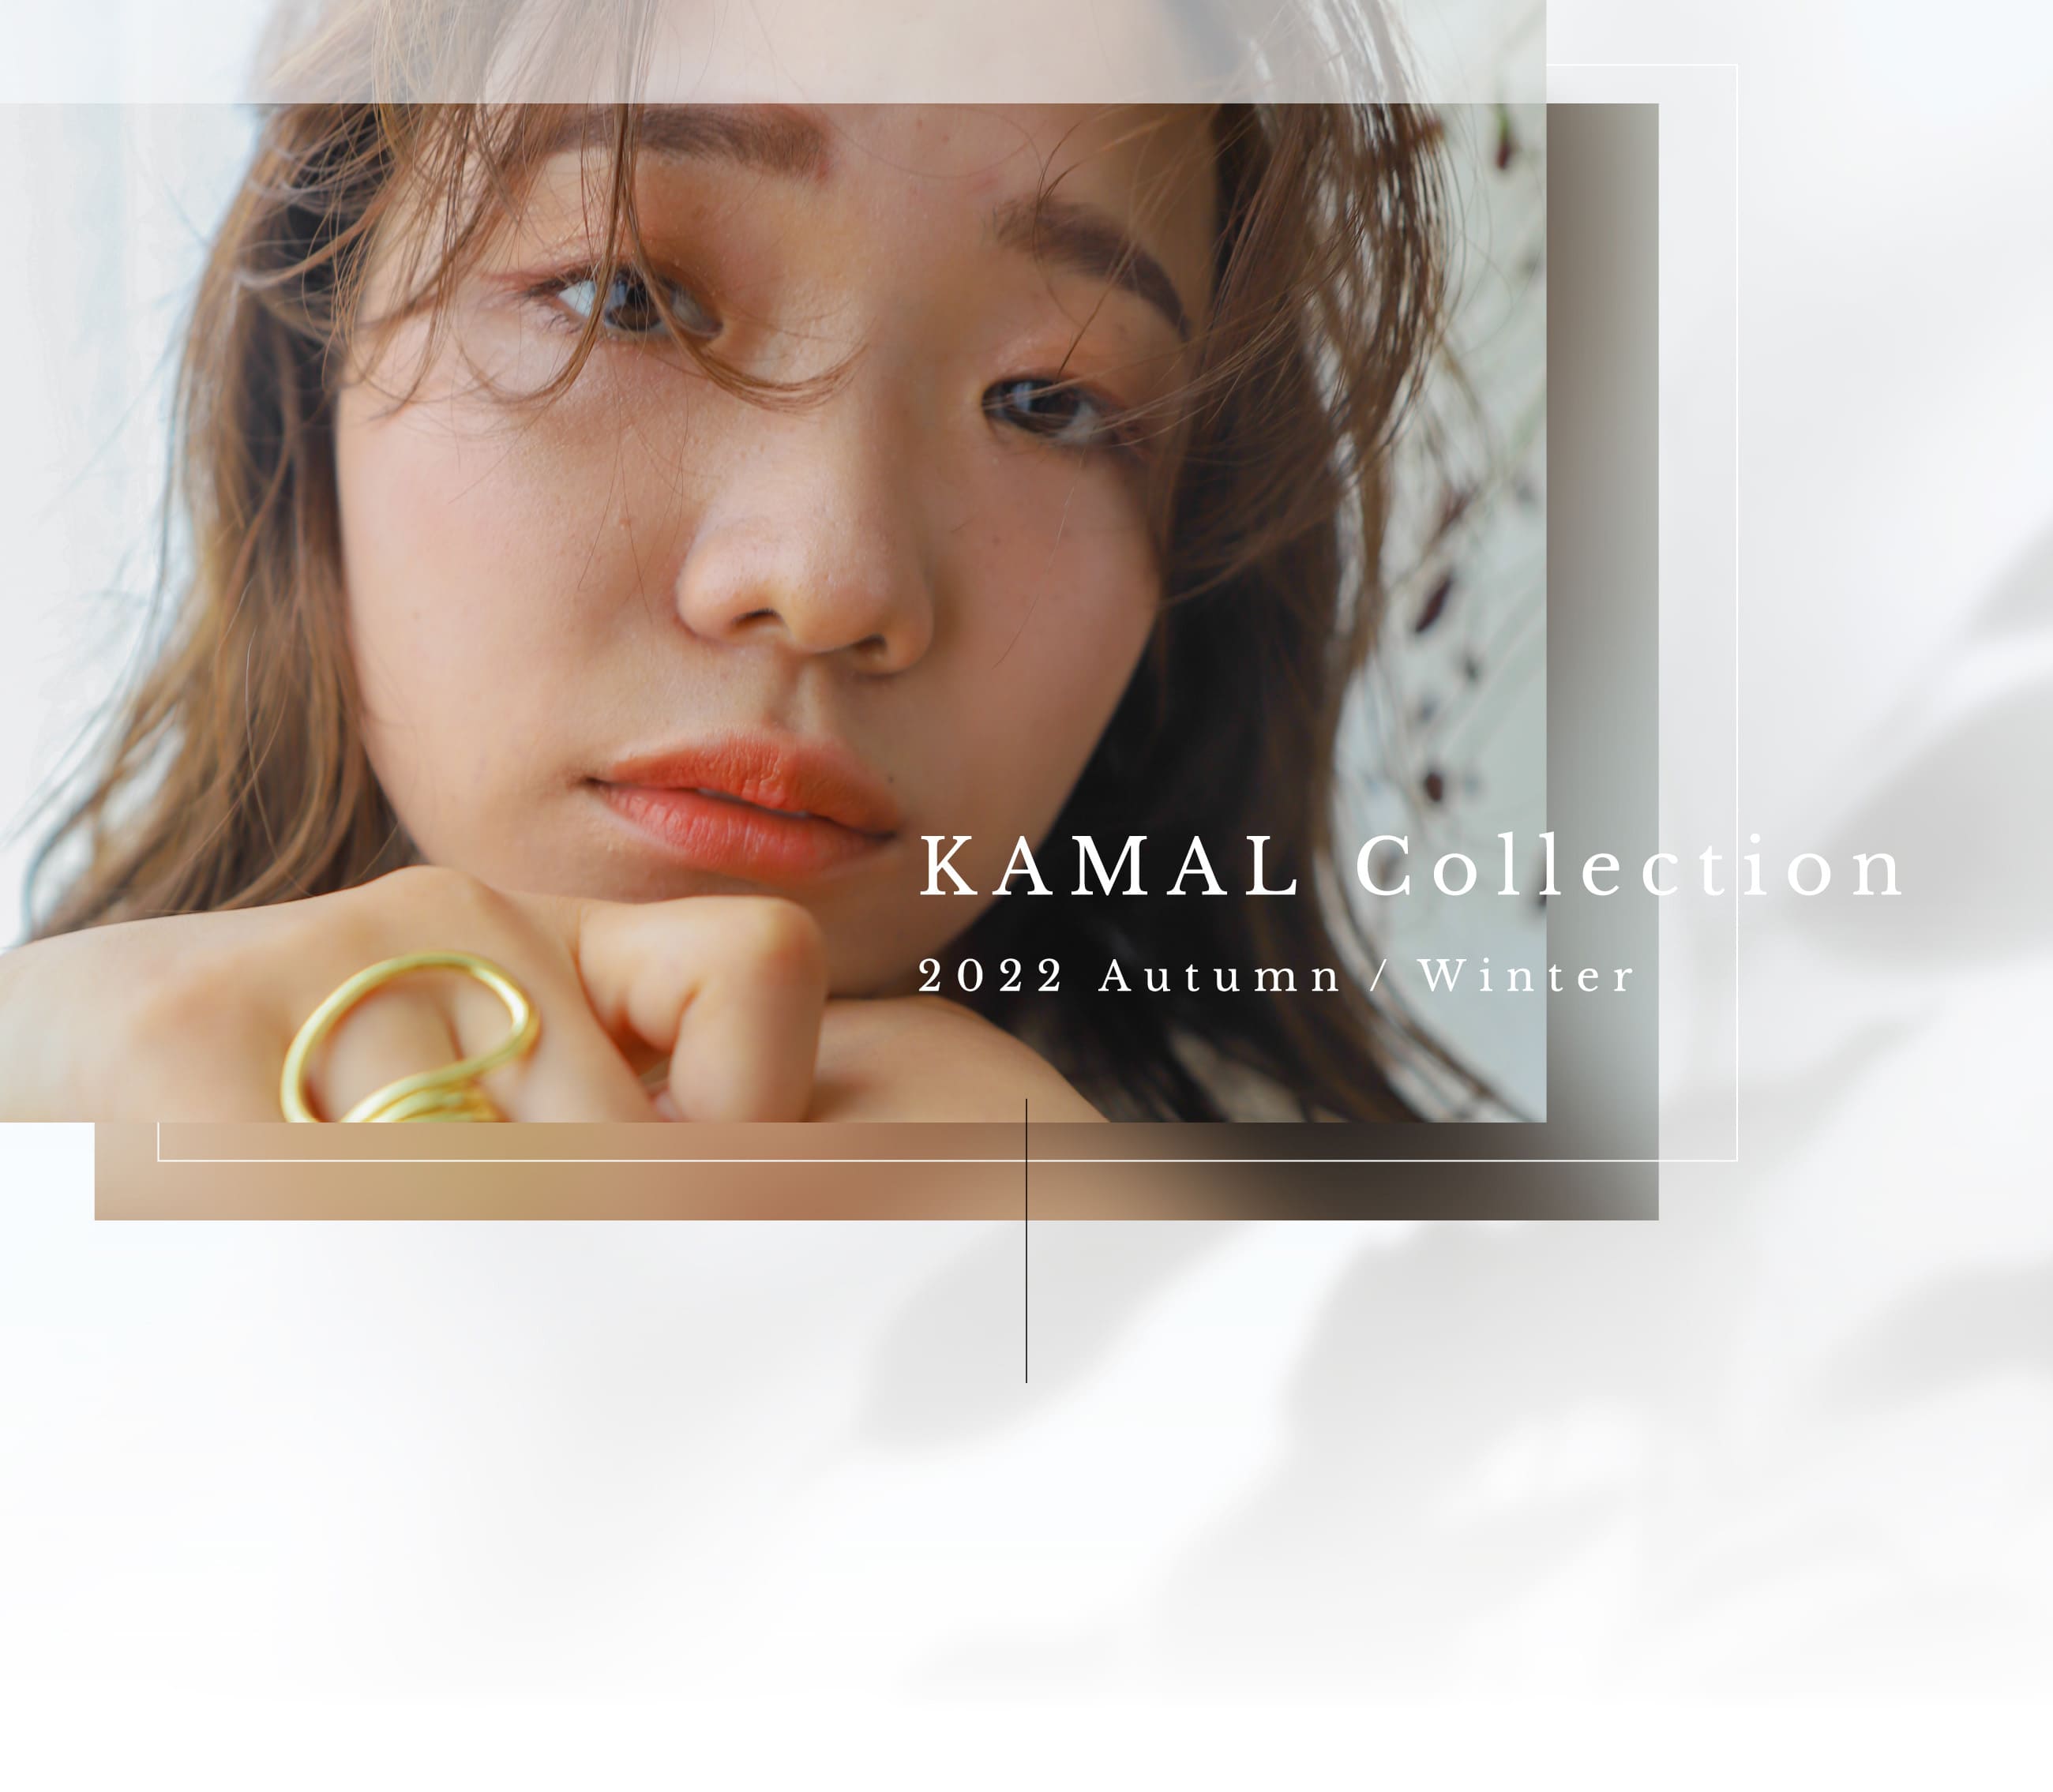 KAMAL Collection 2022 Autumn / Winter